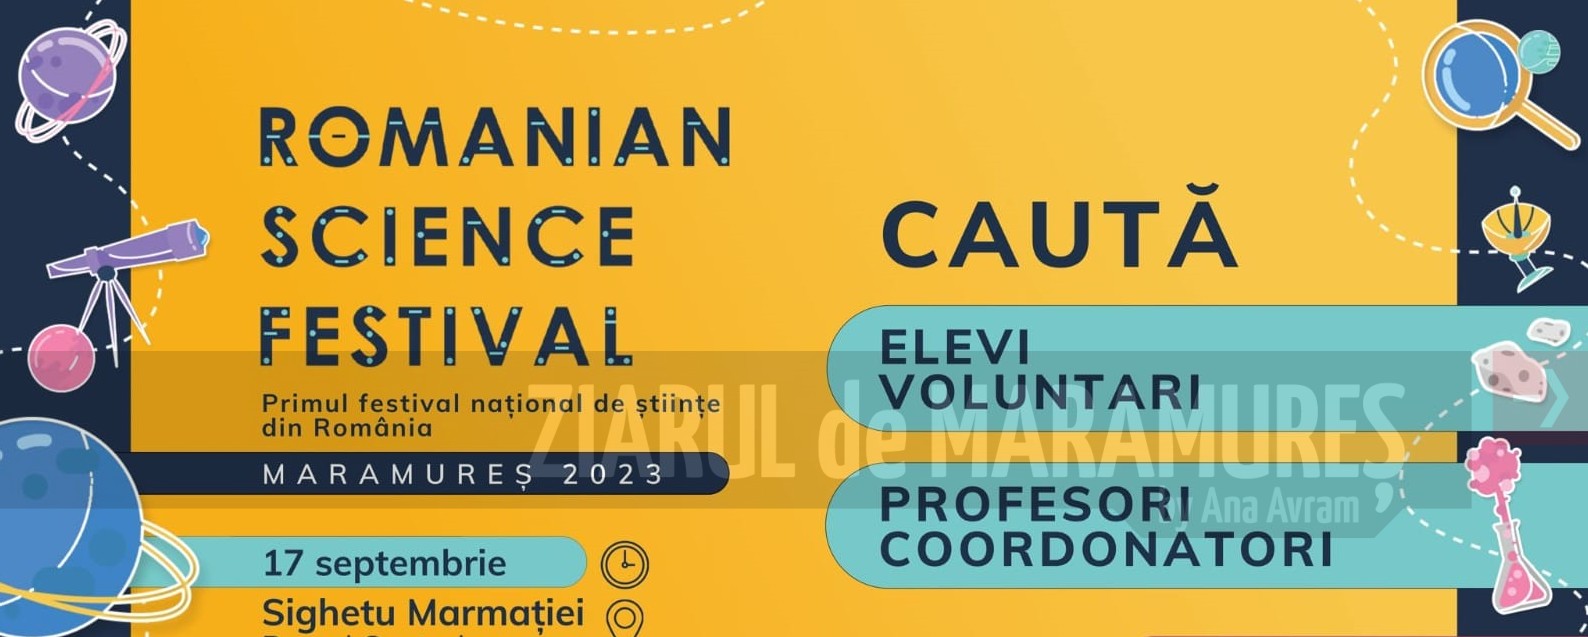 Romanian Science Festival ajunge în Sighetu Marmației. Zeci de experimente științifice realizate în Parcul Central